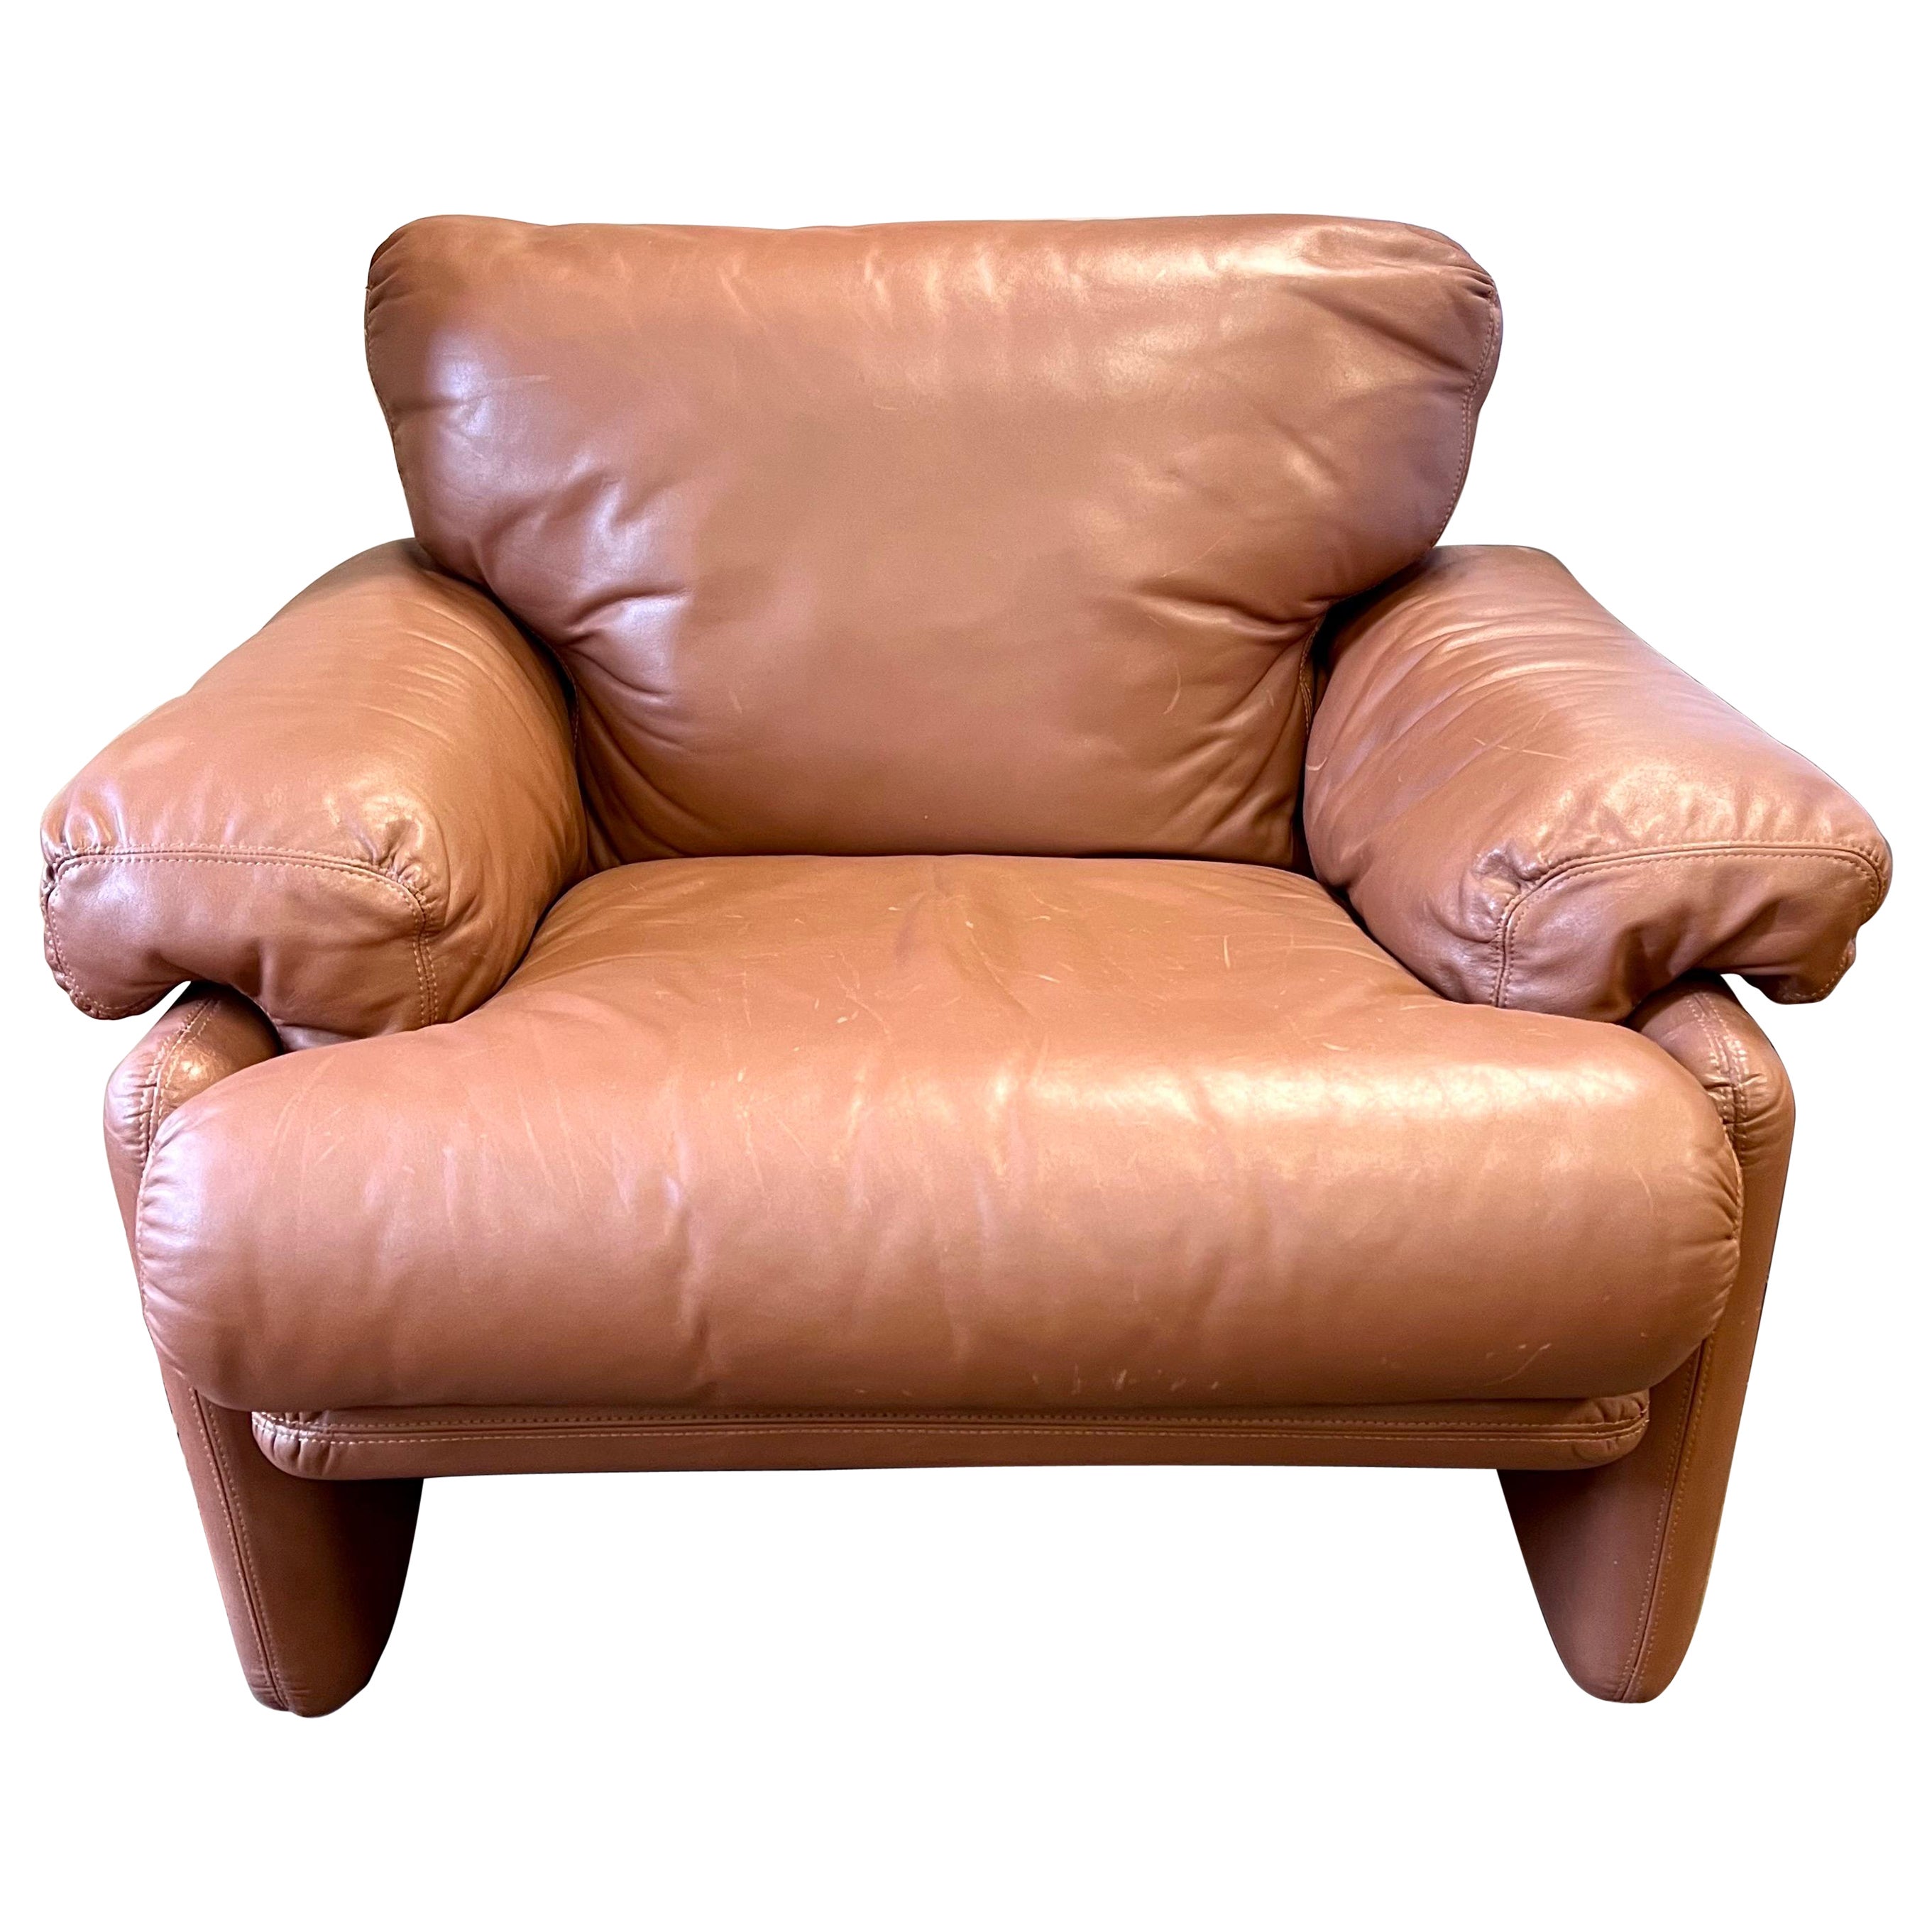 B&B Italia Tobia Scarpa Coronado Lounge Chair in Light Brown Leather